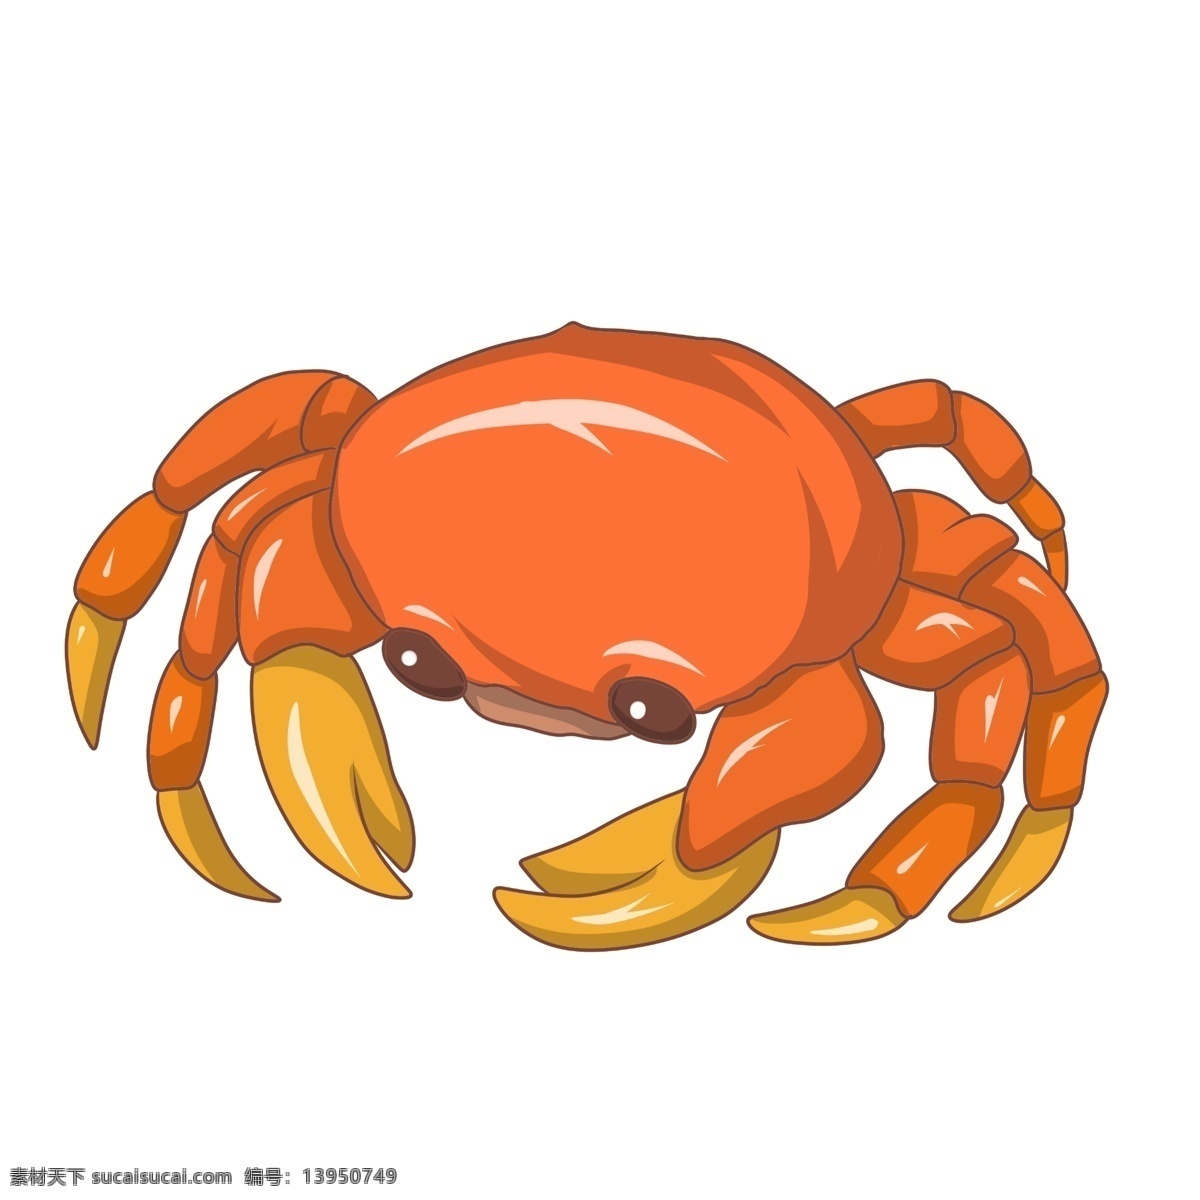 黄色 爬行动物 螃蟹 黄色螃蟹 爬行 动物 煮熟的螃蟹 卡通的螃蟹 螃蟹插画 海产品 海鲜 海洋生物